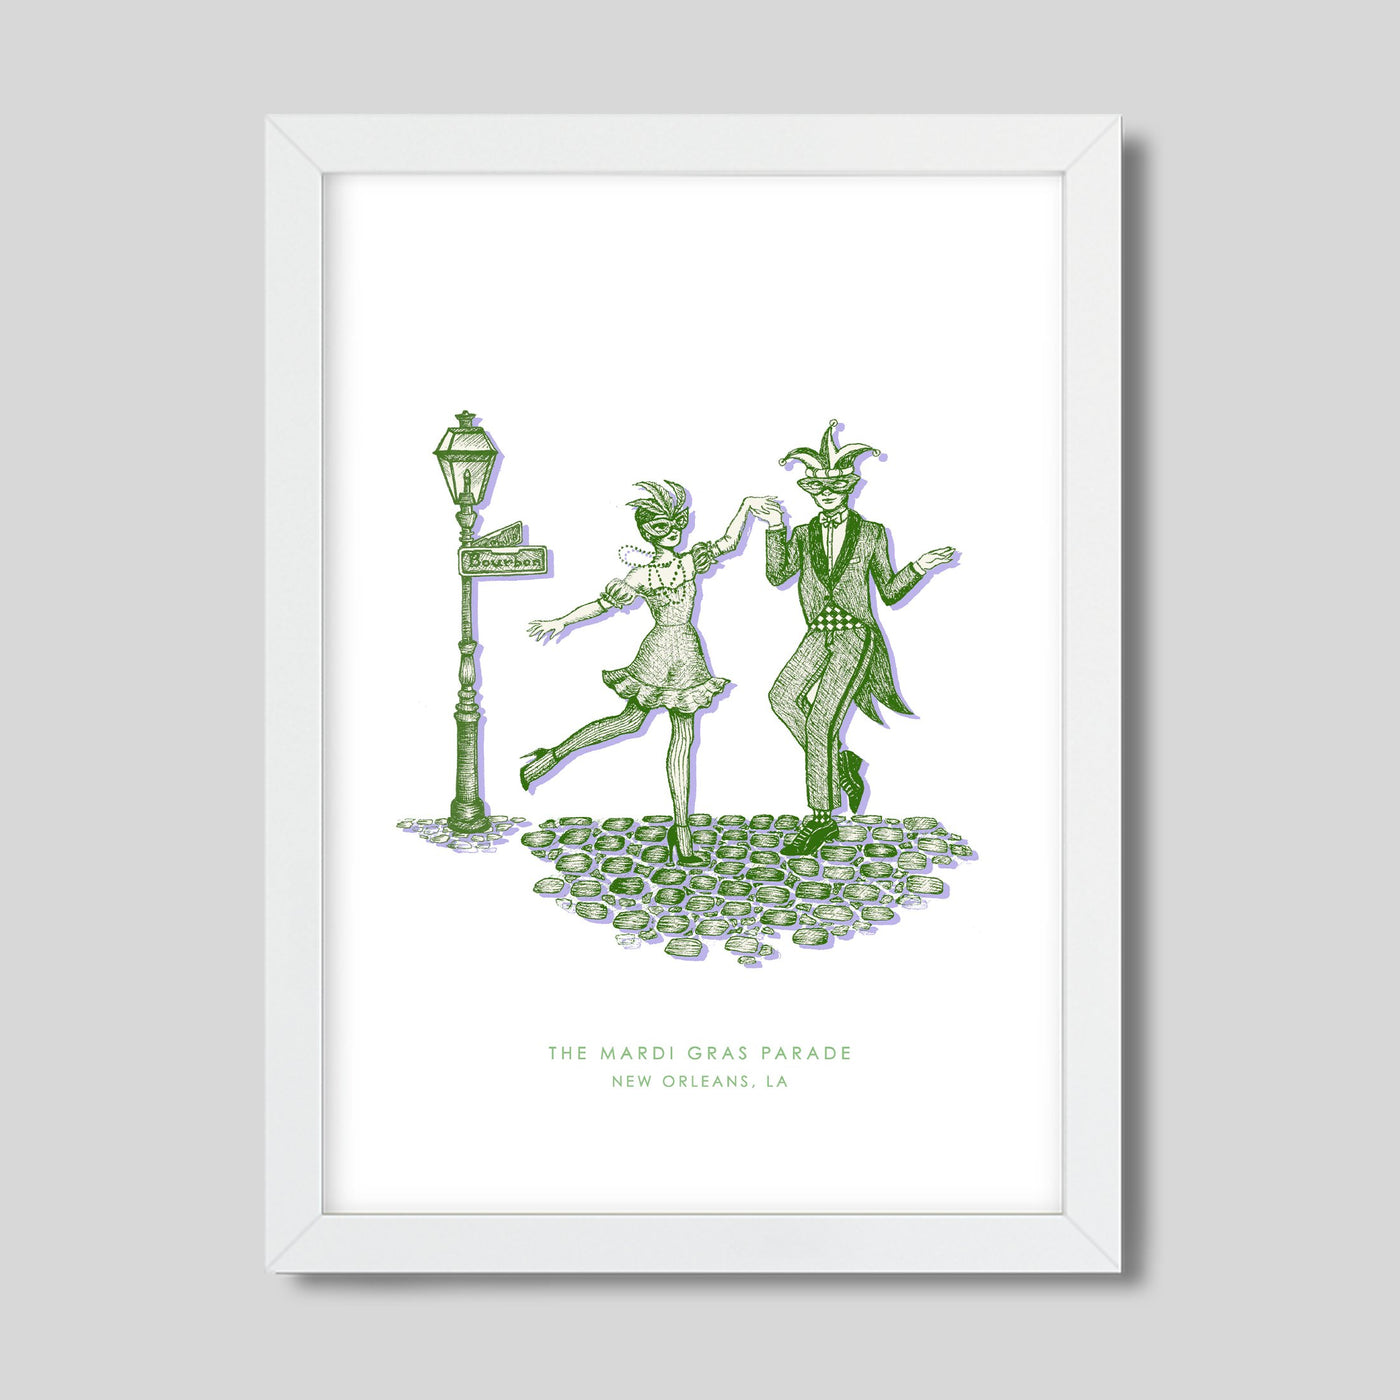 New Orleans Mardi Gras Print Gallery Print Green Print / 8x10 / White Frame Katie Kime